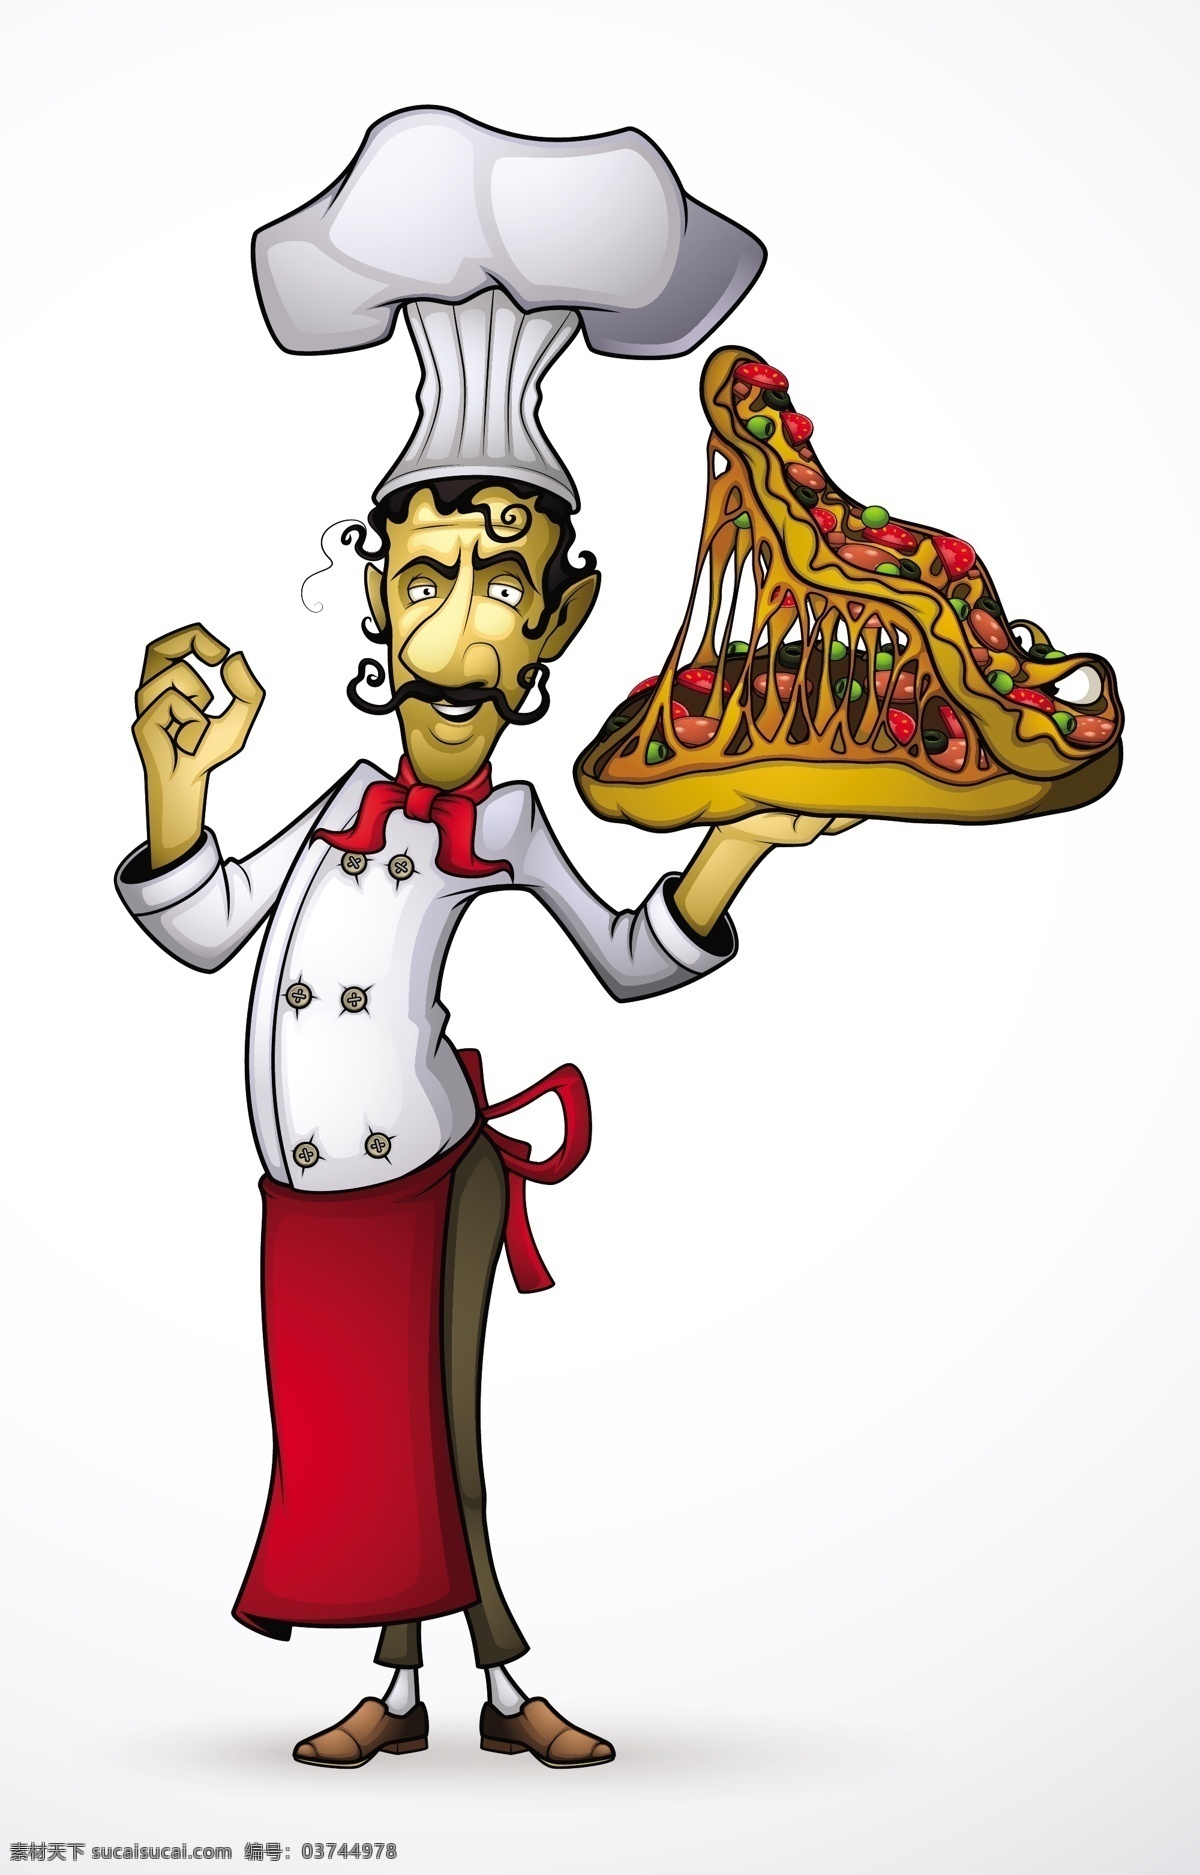 披萨 pizza 比萨 厨师 西餐 美食 意大利披萨 时尚背景 绚丽背景 背景素材 背景图案 矢量背景 背景设计 抽象背景 抽象设计 卡通背景 矢量设计 卡通设计 艺术设计 餐饮美食 生活百科 矢量